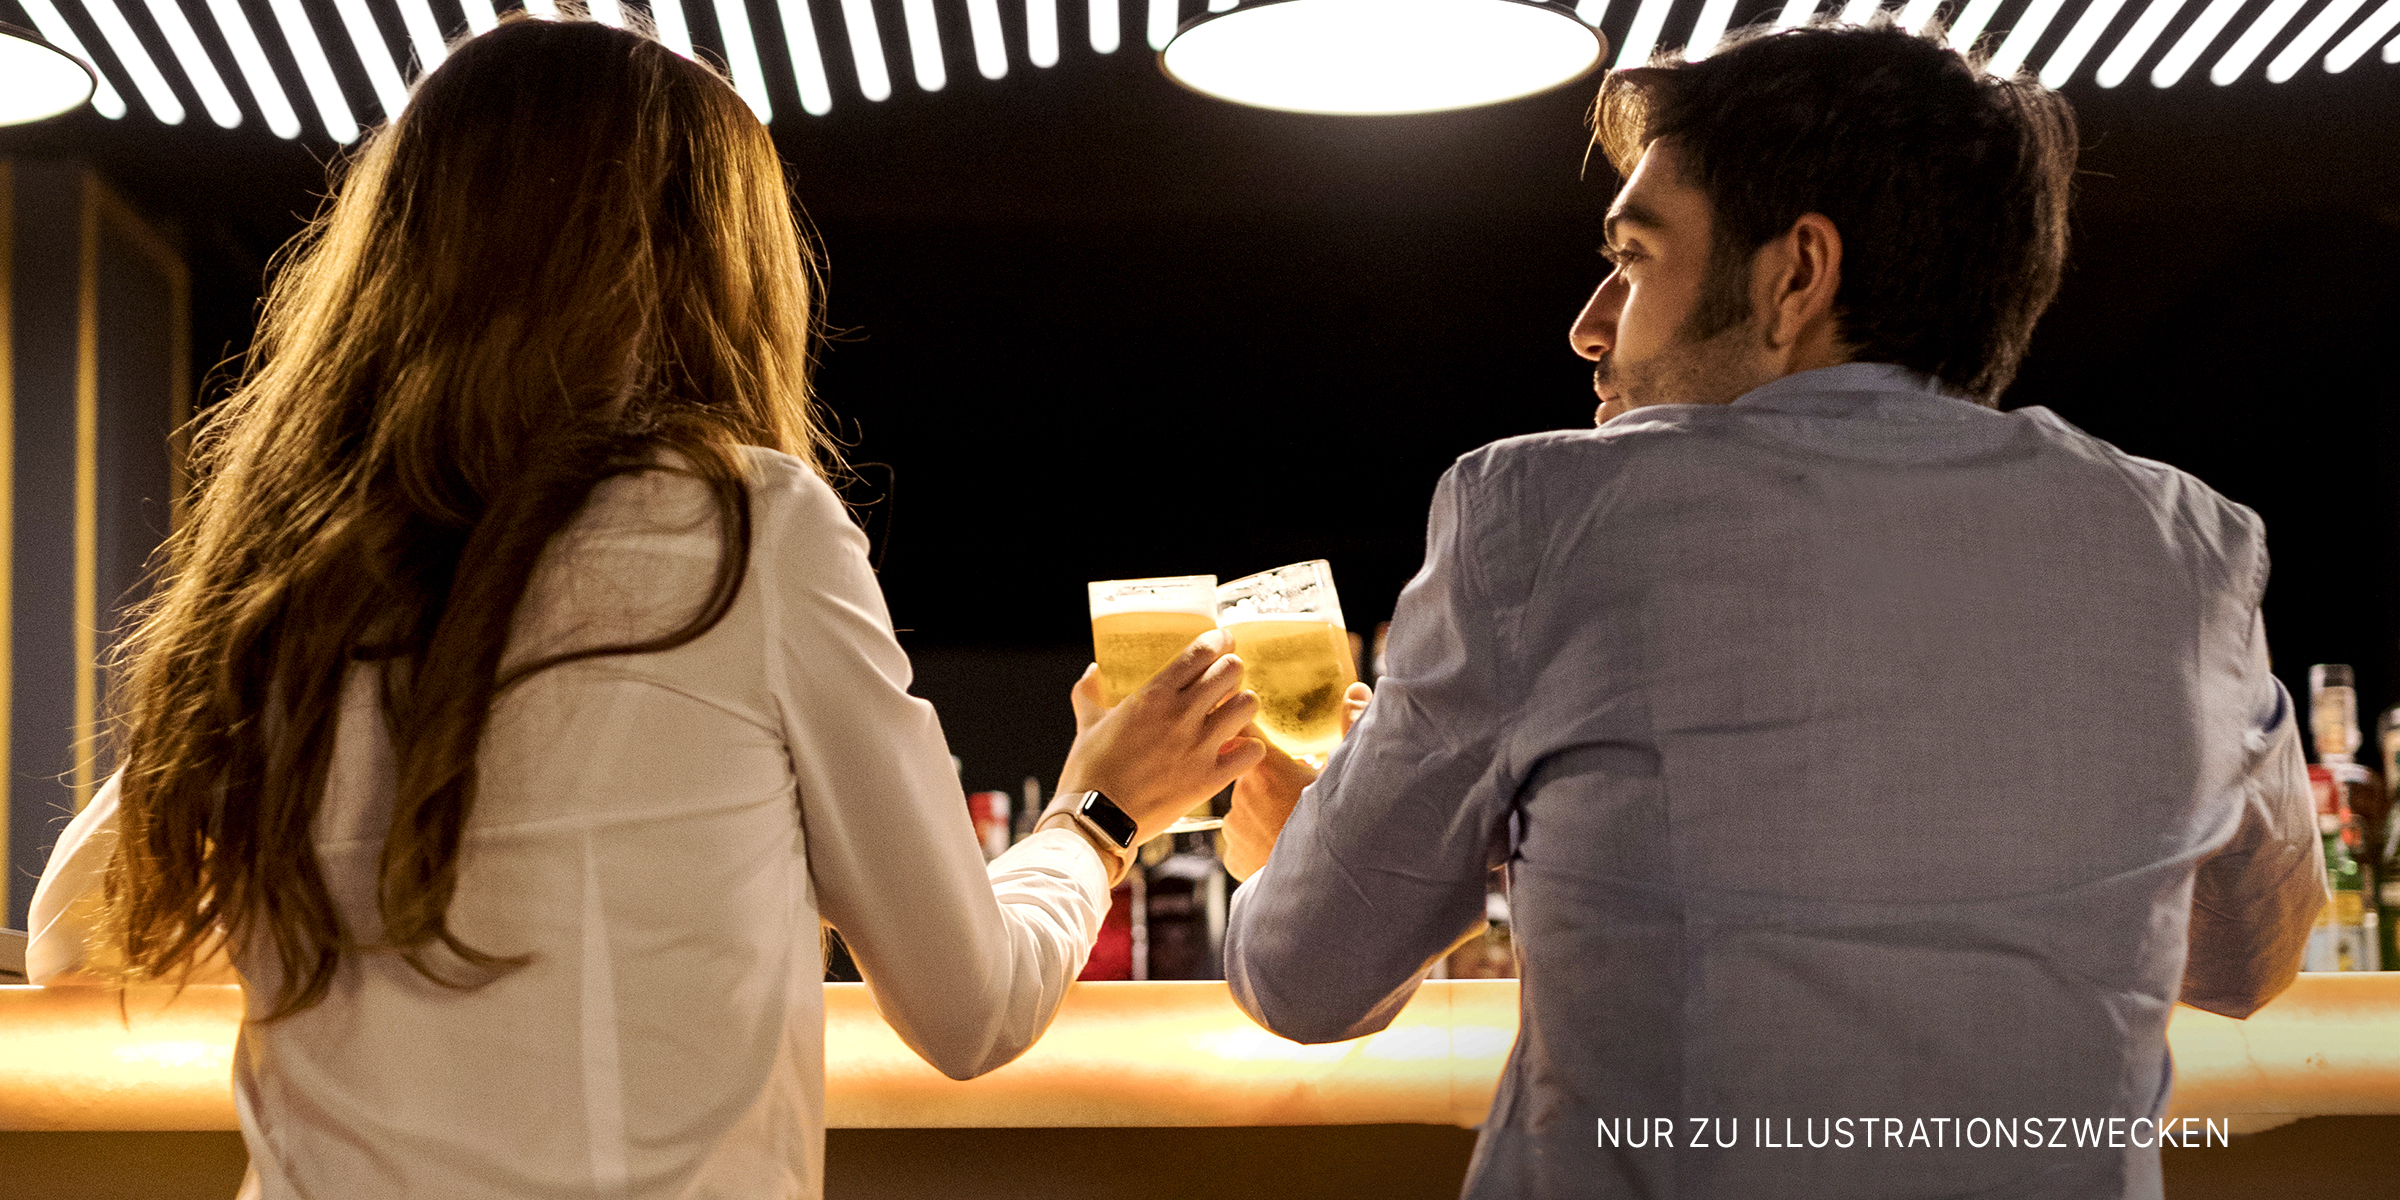 Zwei Menschen bei einem Drink in einer Bar | Quelle: Shutterstock